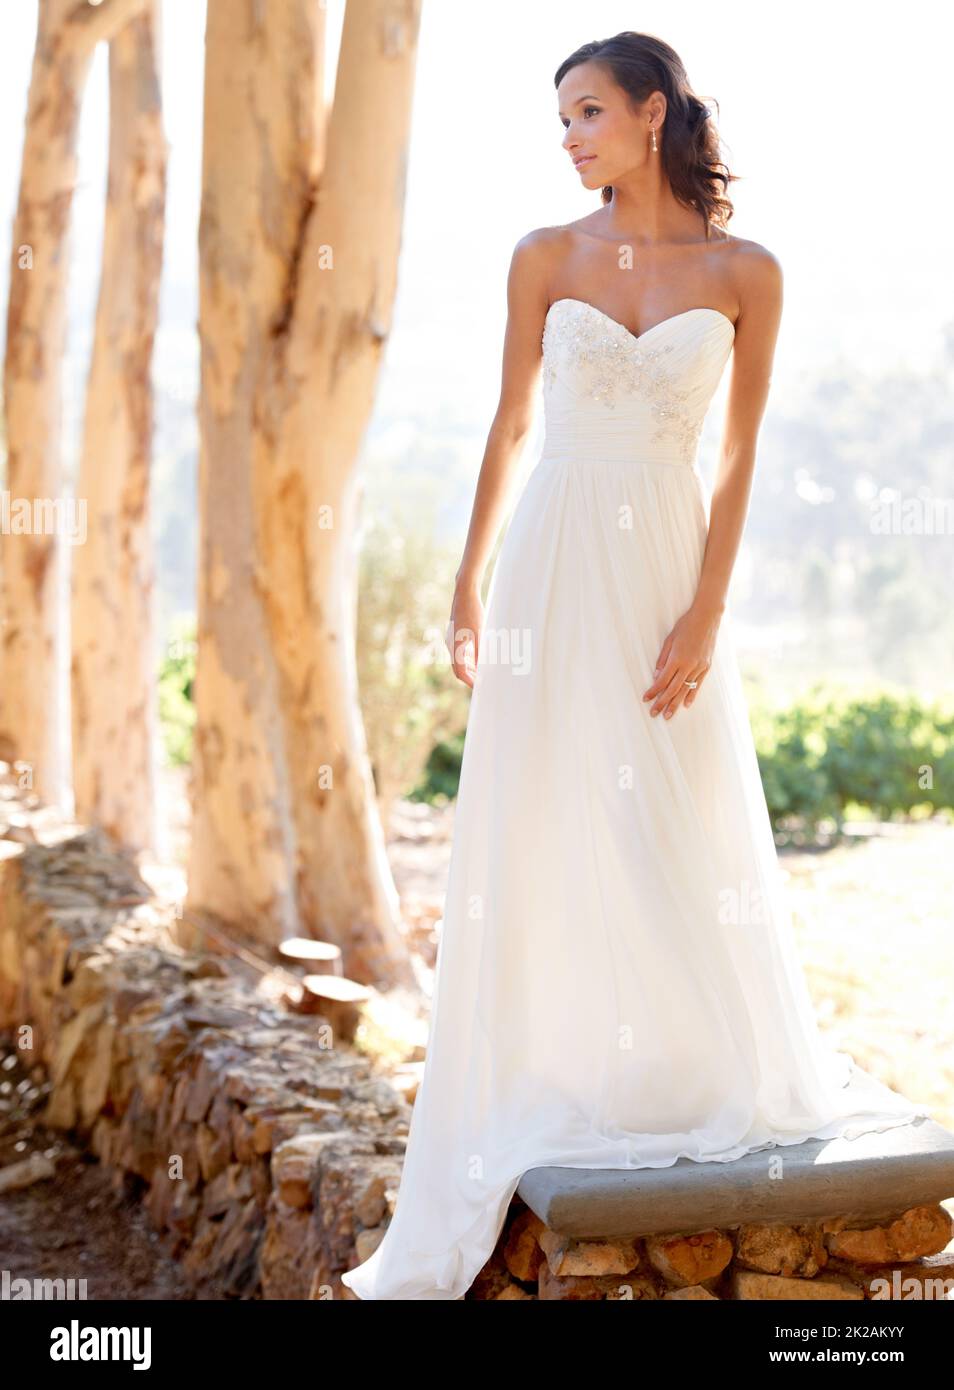 Natürliche Braut. Eine junge Braut posiert in ihrem Hochzeitskleid im Freien. Stockfoto